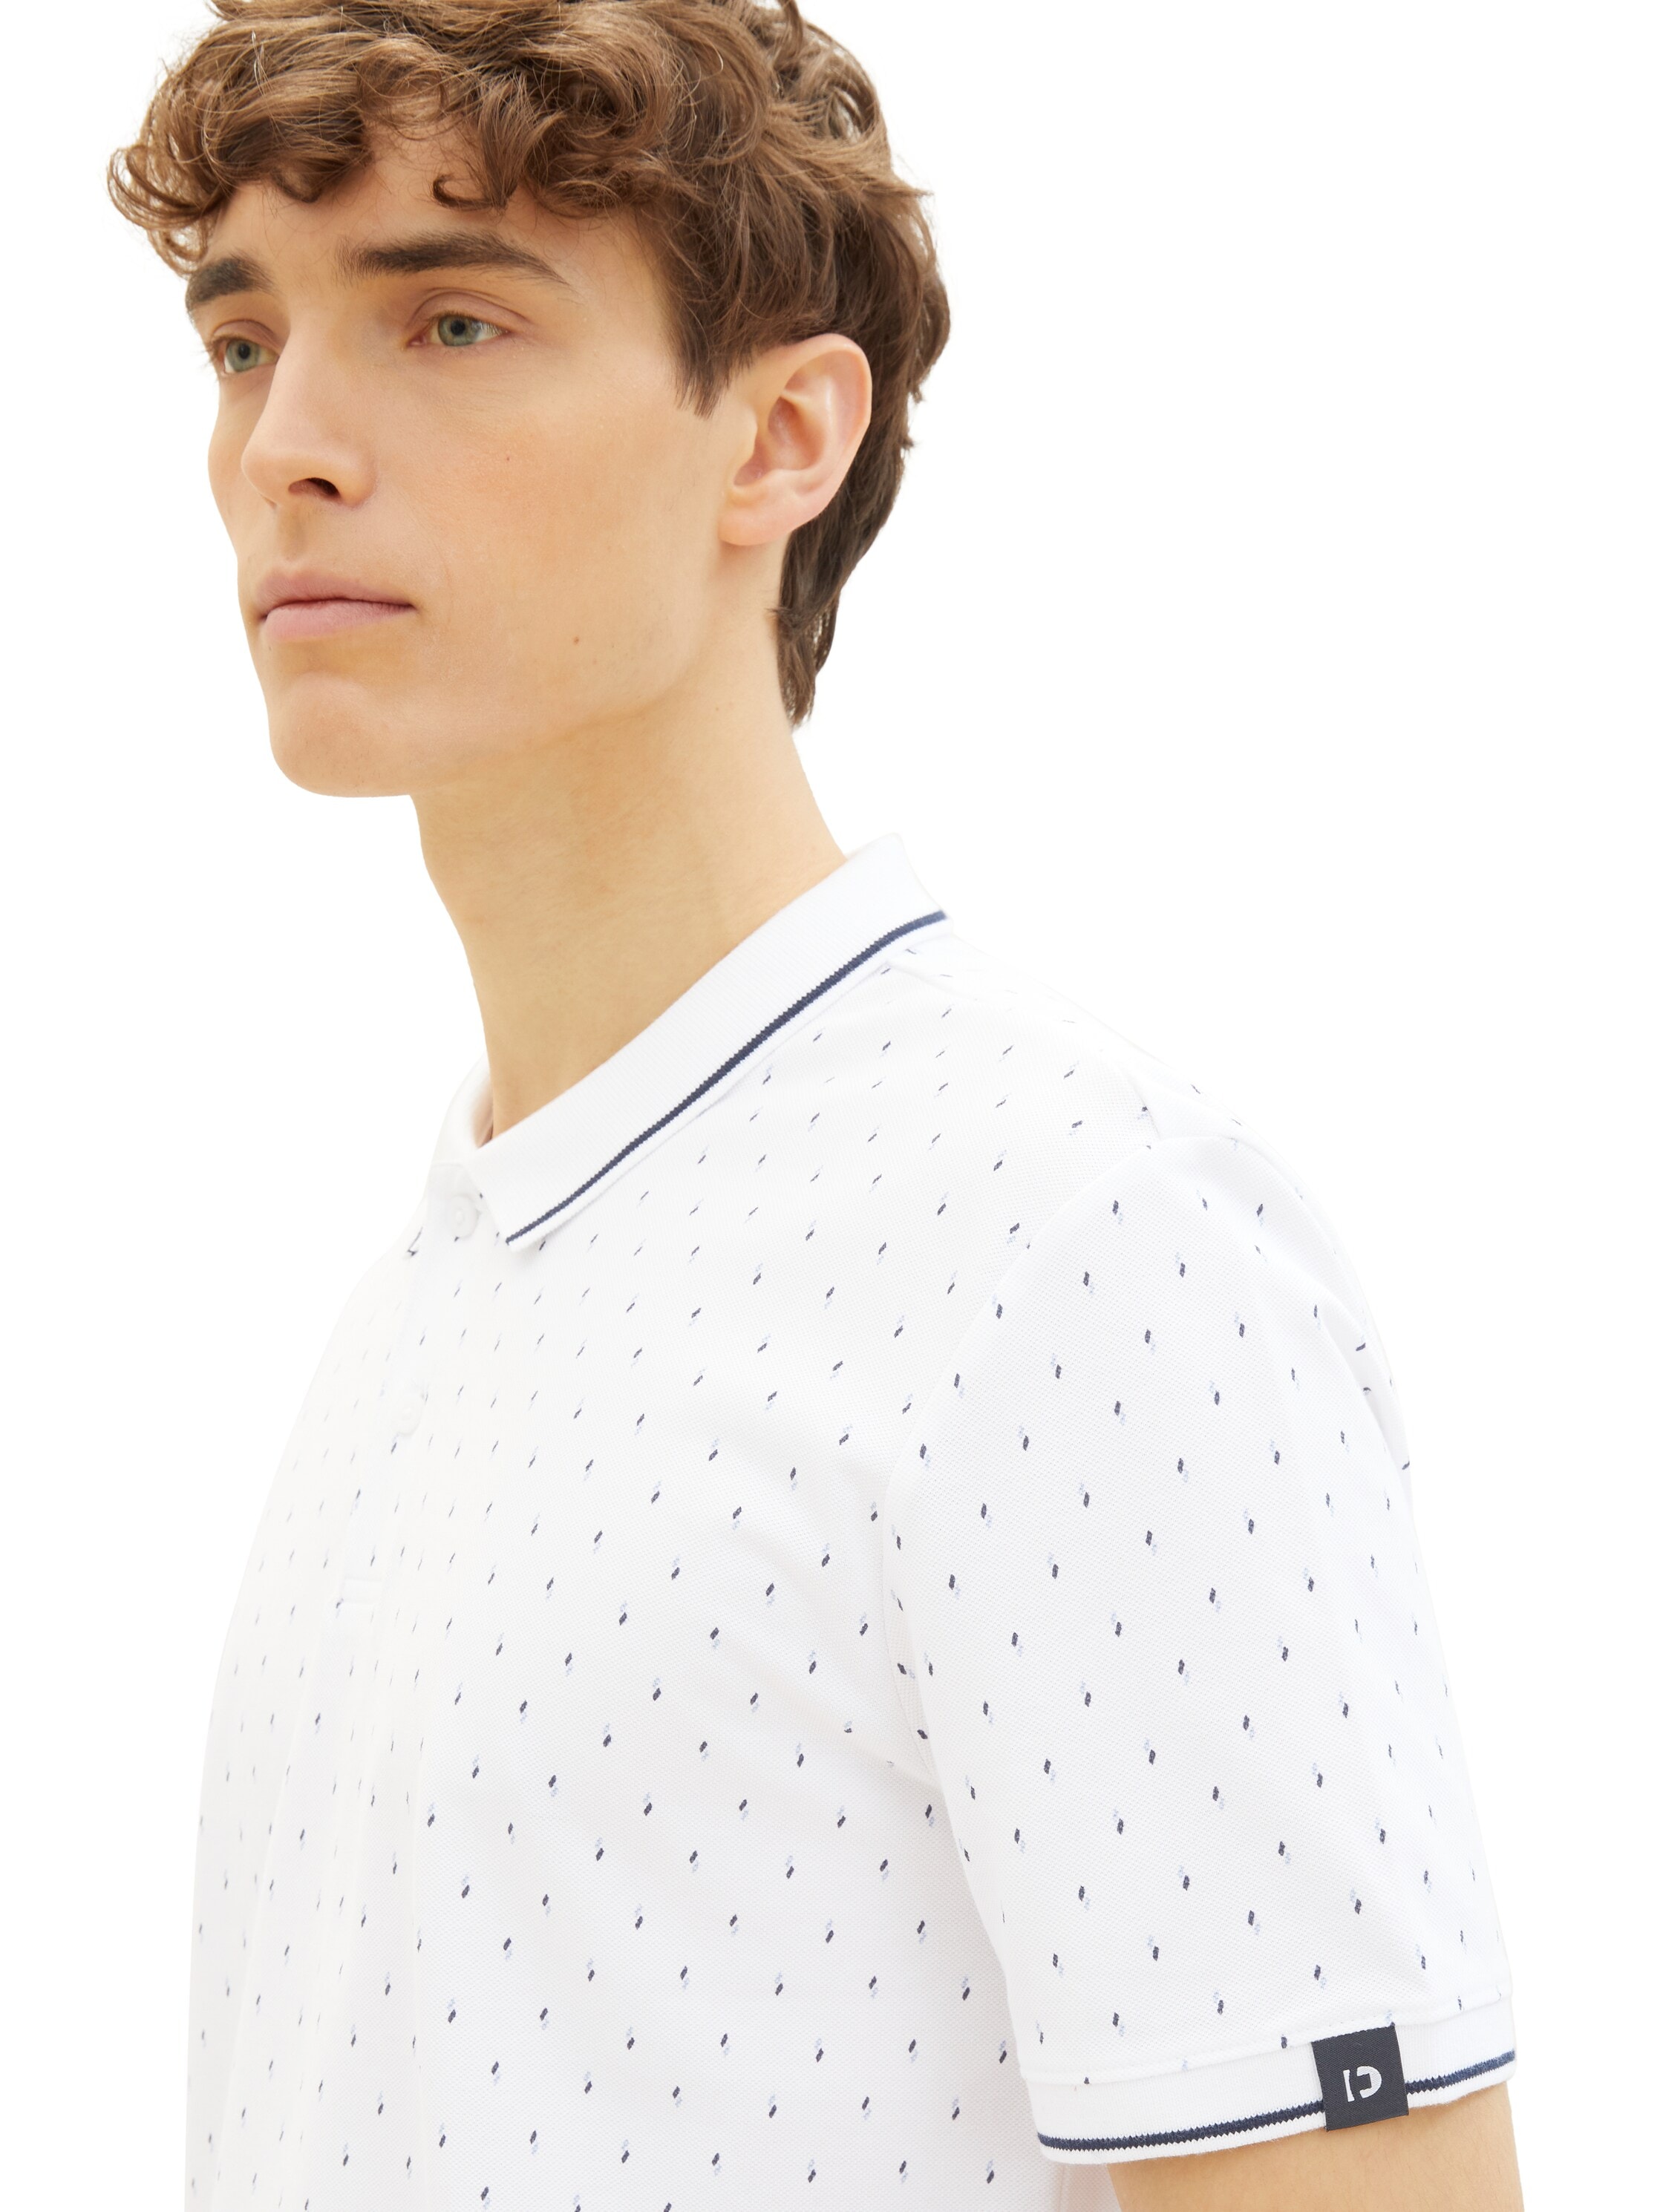 TOM TAILOR Denim Poloshirt, mit Minimal-Print und aus reiner Baumwolle